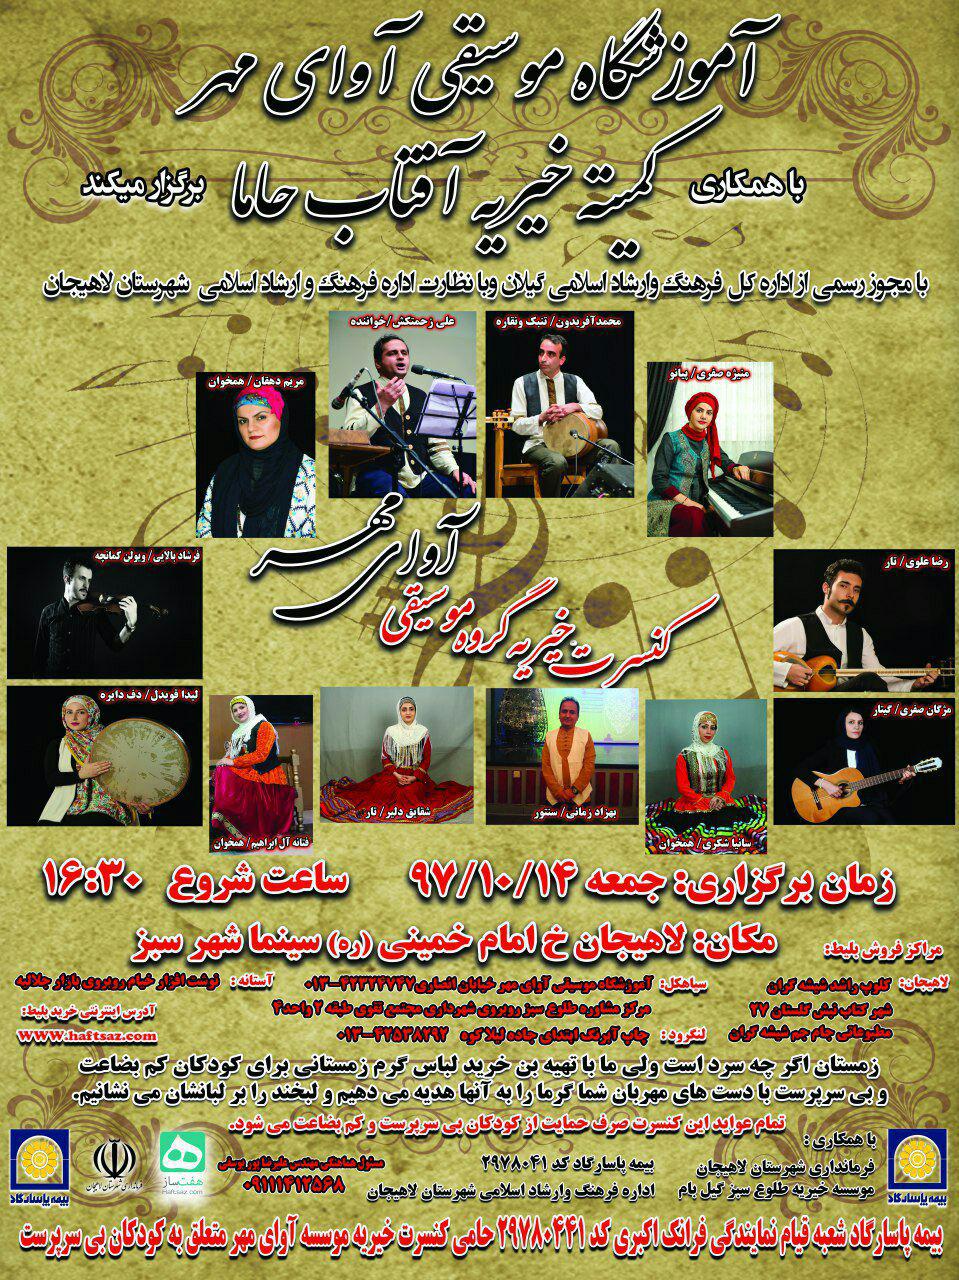 کنسرت خیریه گروه موسیقی آوای مهر در لاهیجان برگزار می شود